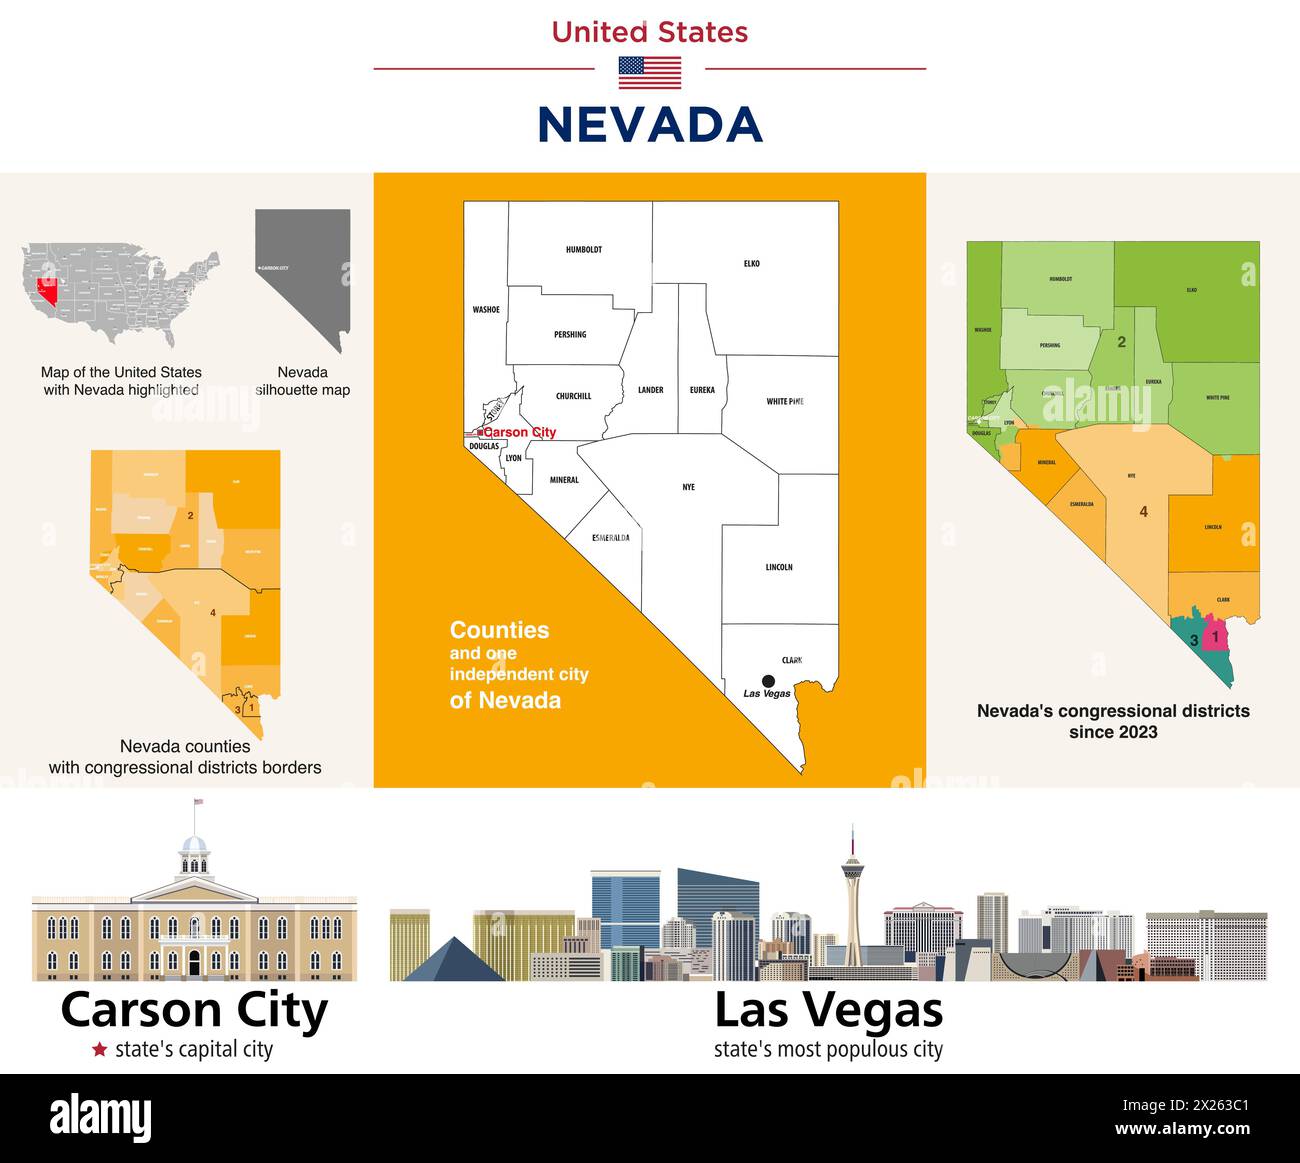 Nevada Countys Karte und Kongressbezirke seit 2023 Karte. Skylines von Carson City (Hauptstadt des Bundesstaates) und Las Vegas (bevölkerungsreichste Stadt) Stock Vektor